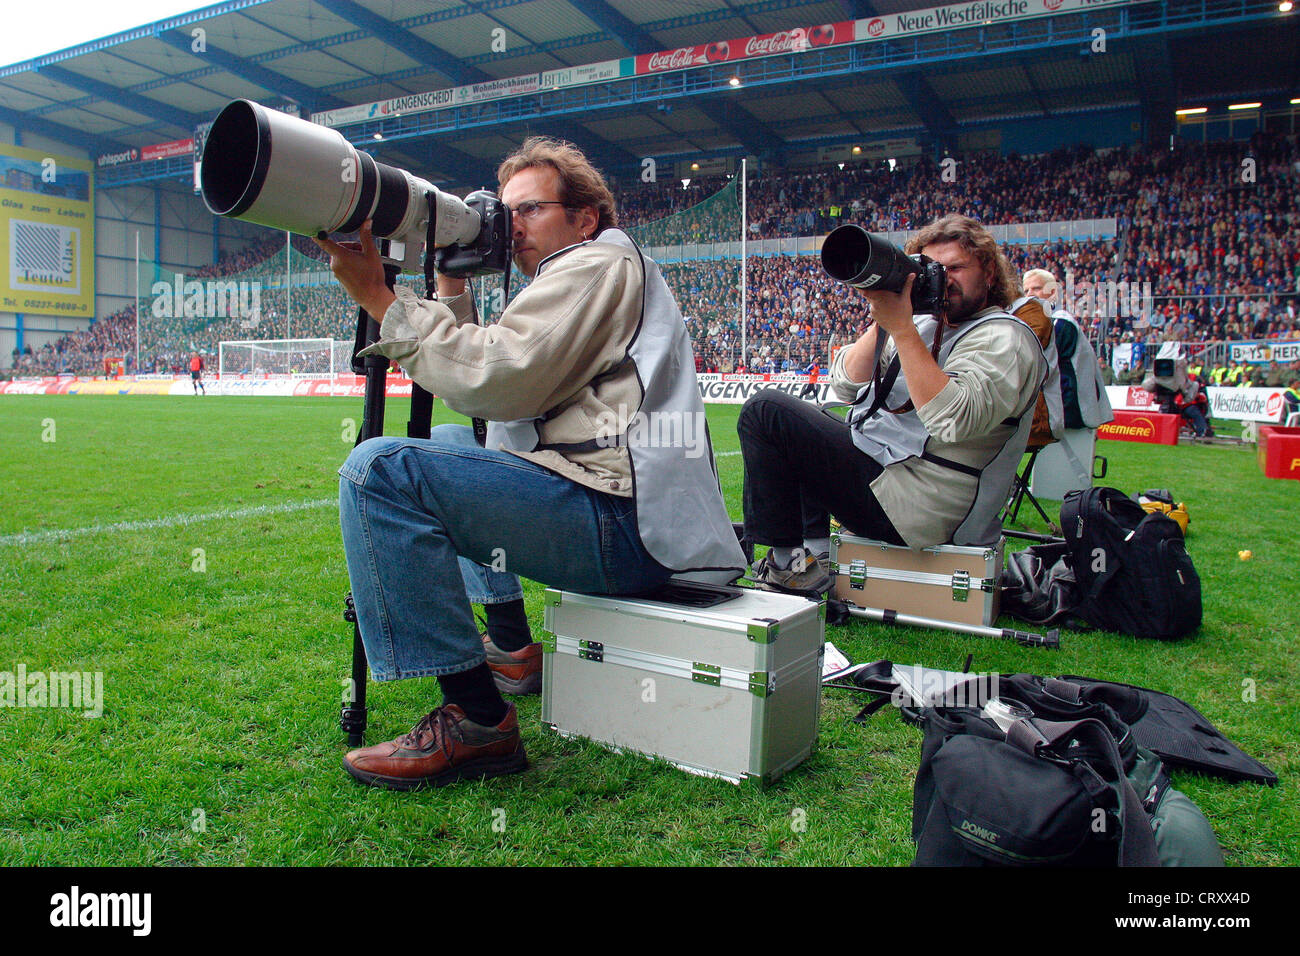 Bielefeld, i fotografi sportivi in Bundesliga partita di calcio Foto Stock